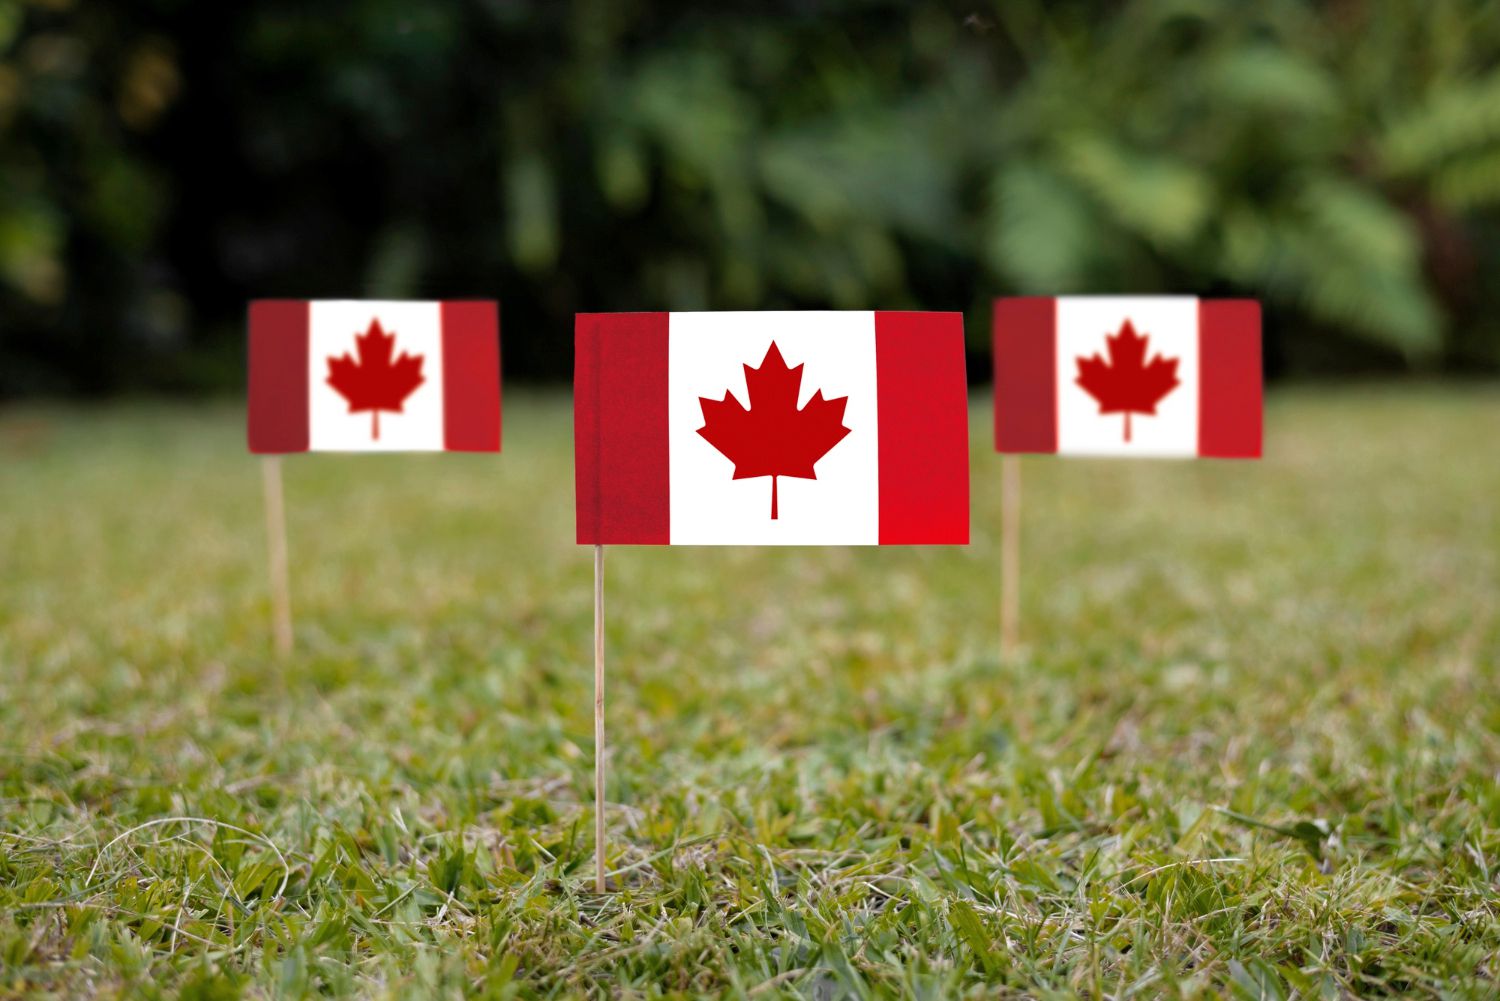 Визы в Канаду: откройте двери в новую жизнь с помощью профессиональных визовых услуг